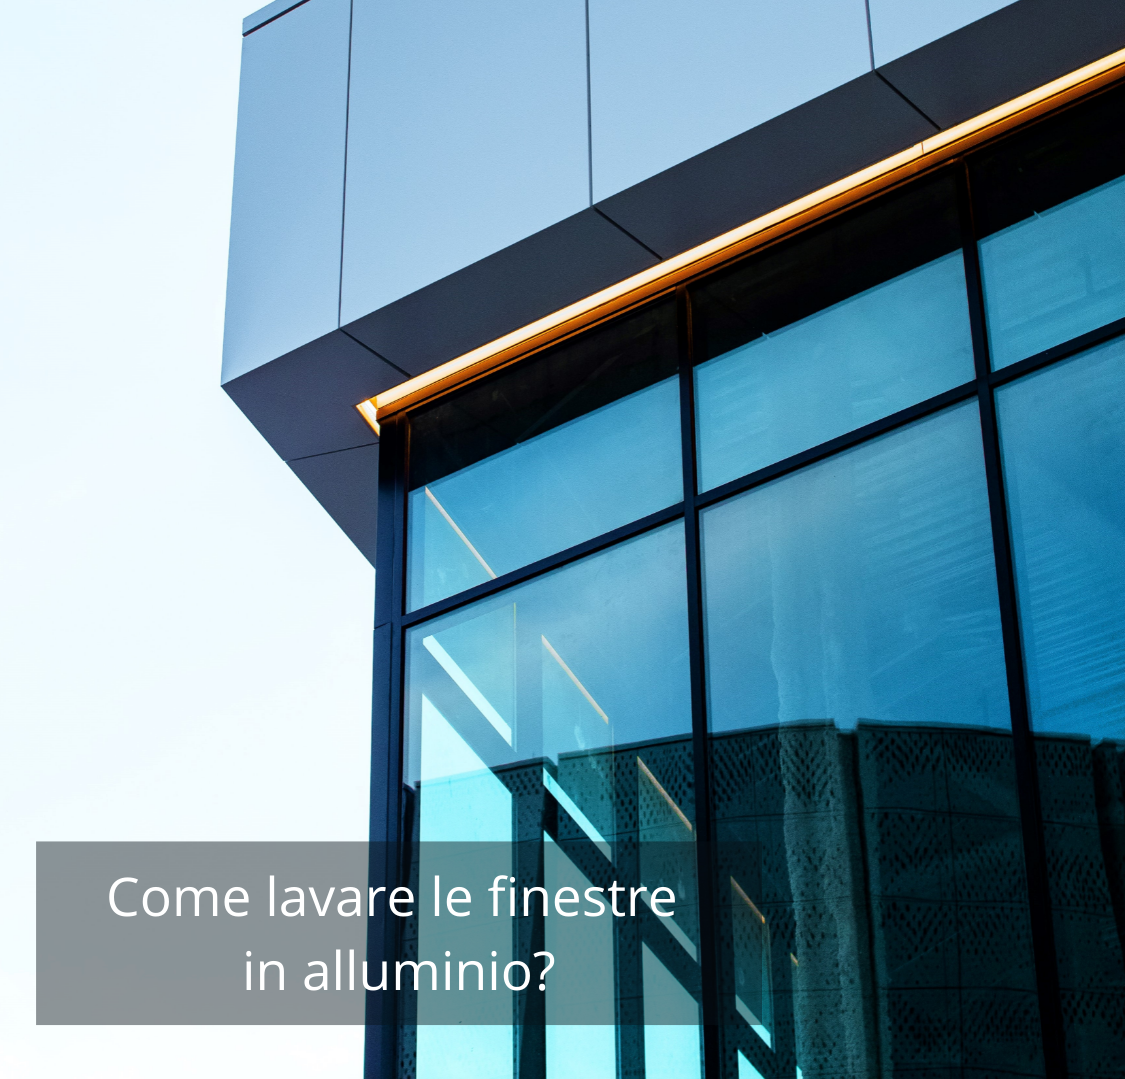 Come pulire finestre in alluminio?